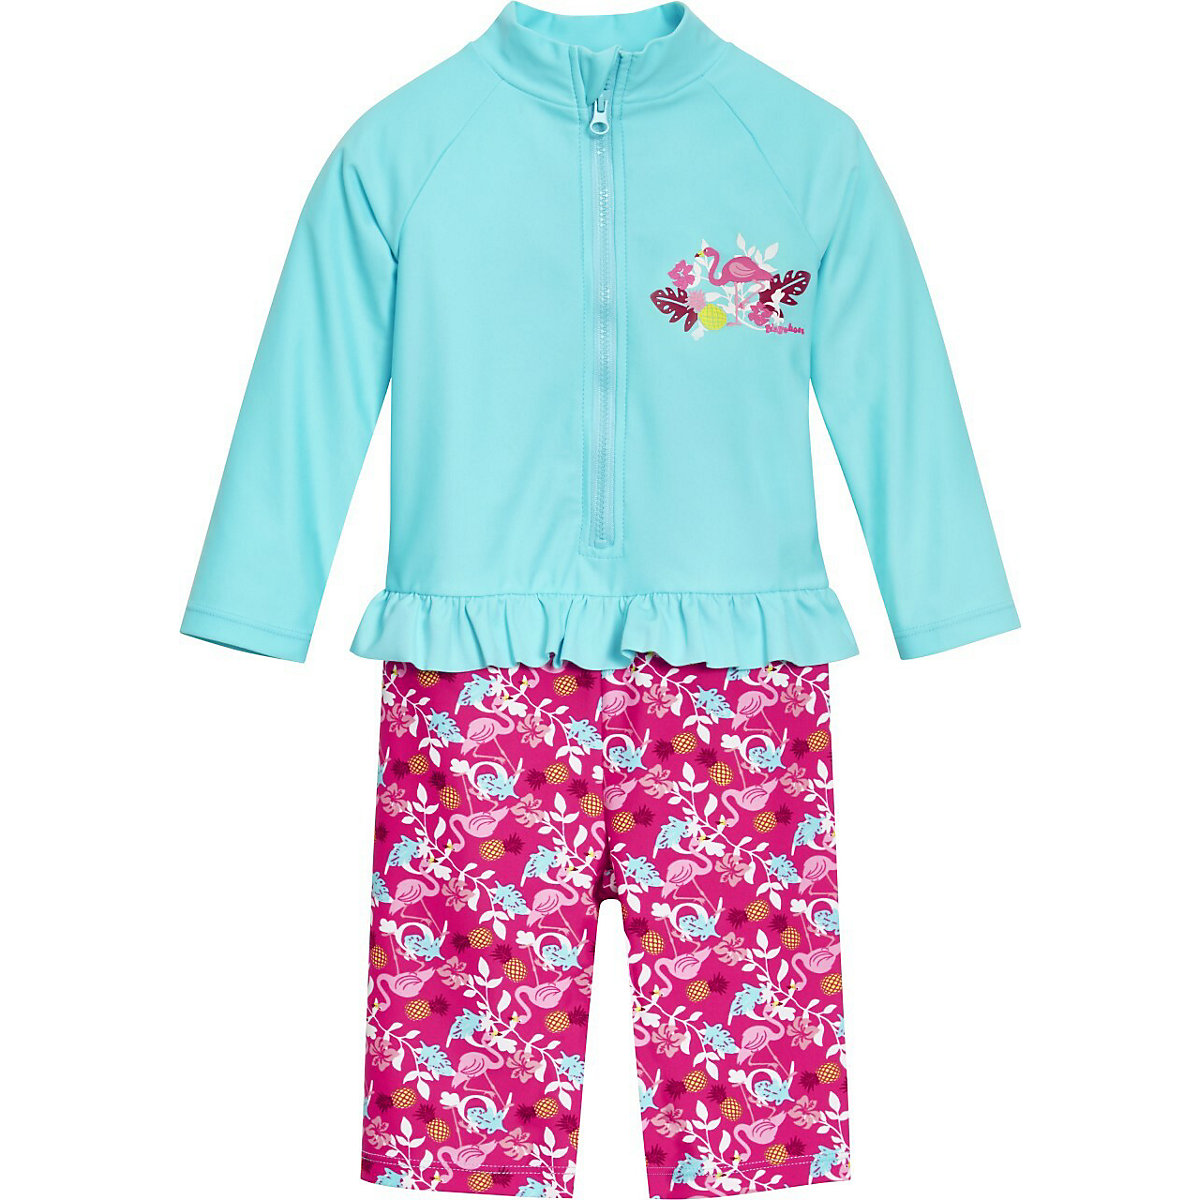 Playshoes UV-Schutz Einteiler Flamingo 1/1 Arm Schwimmanzüge für Mädchen türkis